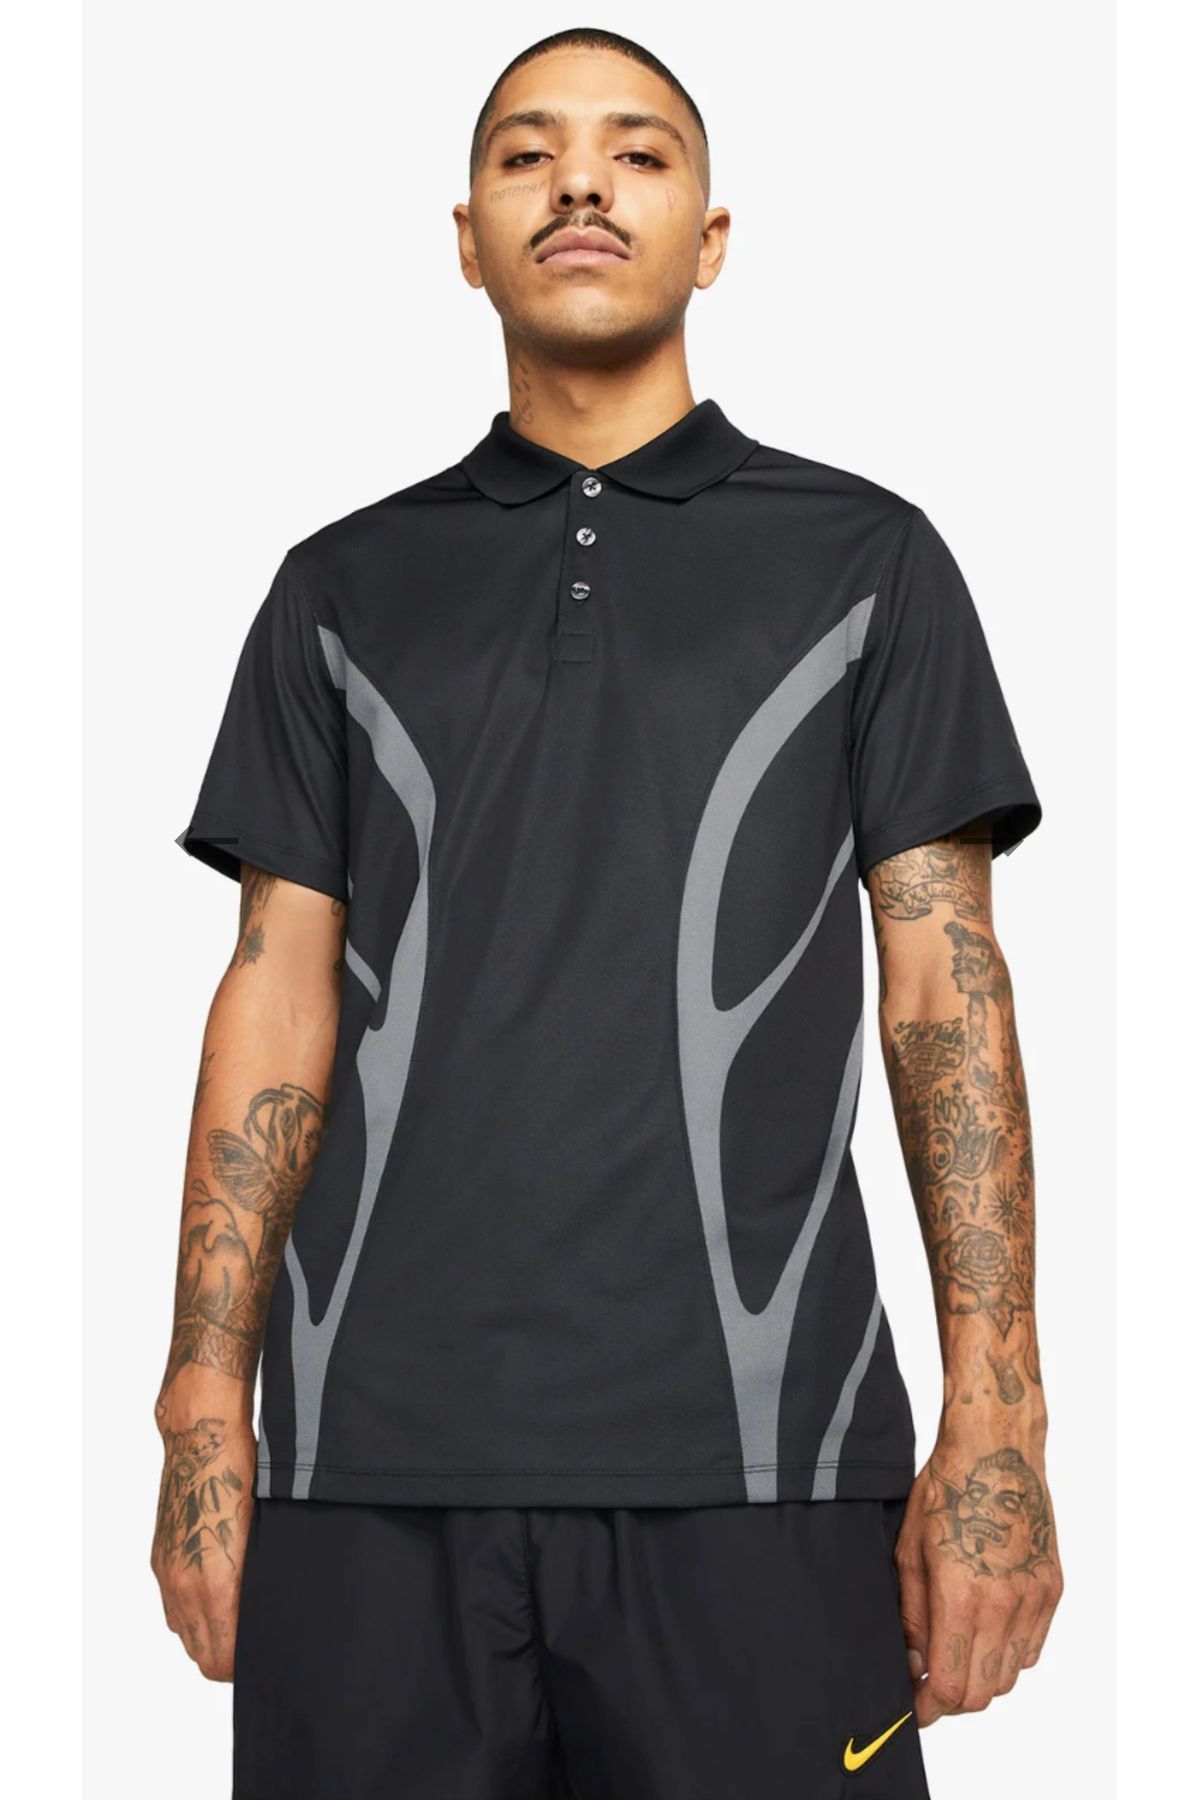 Nike Nocta X Nike G Golf Polo Tshirt